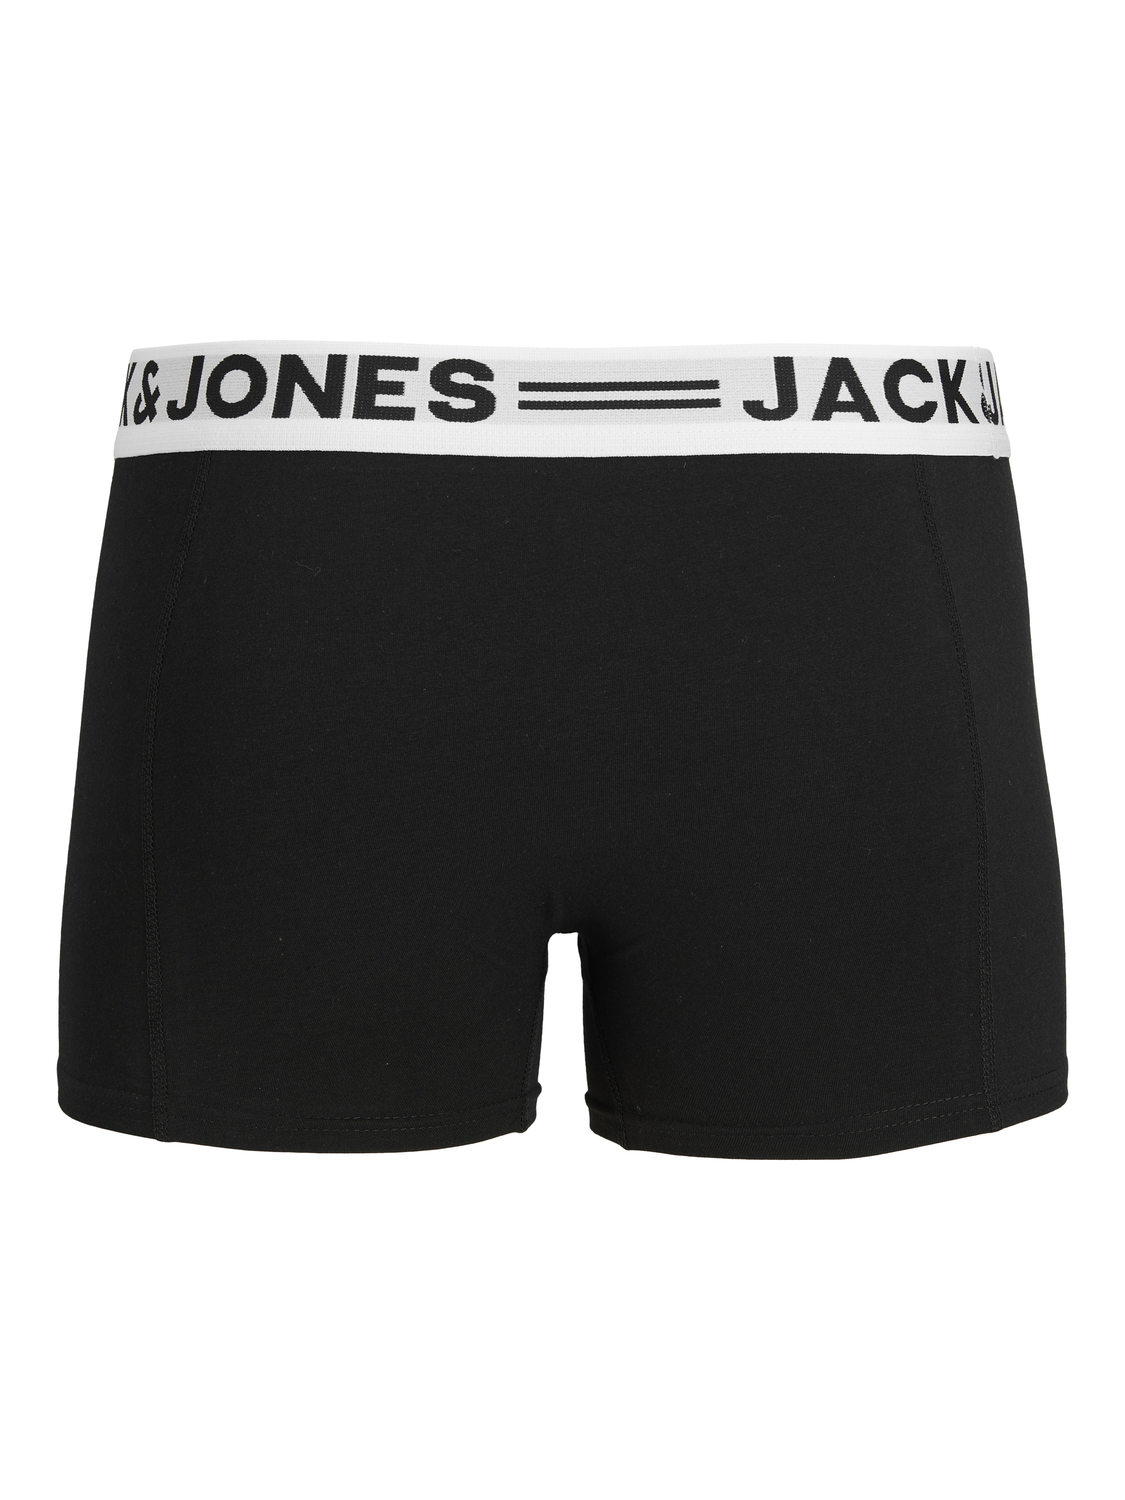 Jack & Jones 3-pack Trunks -Black - 12081832